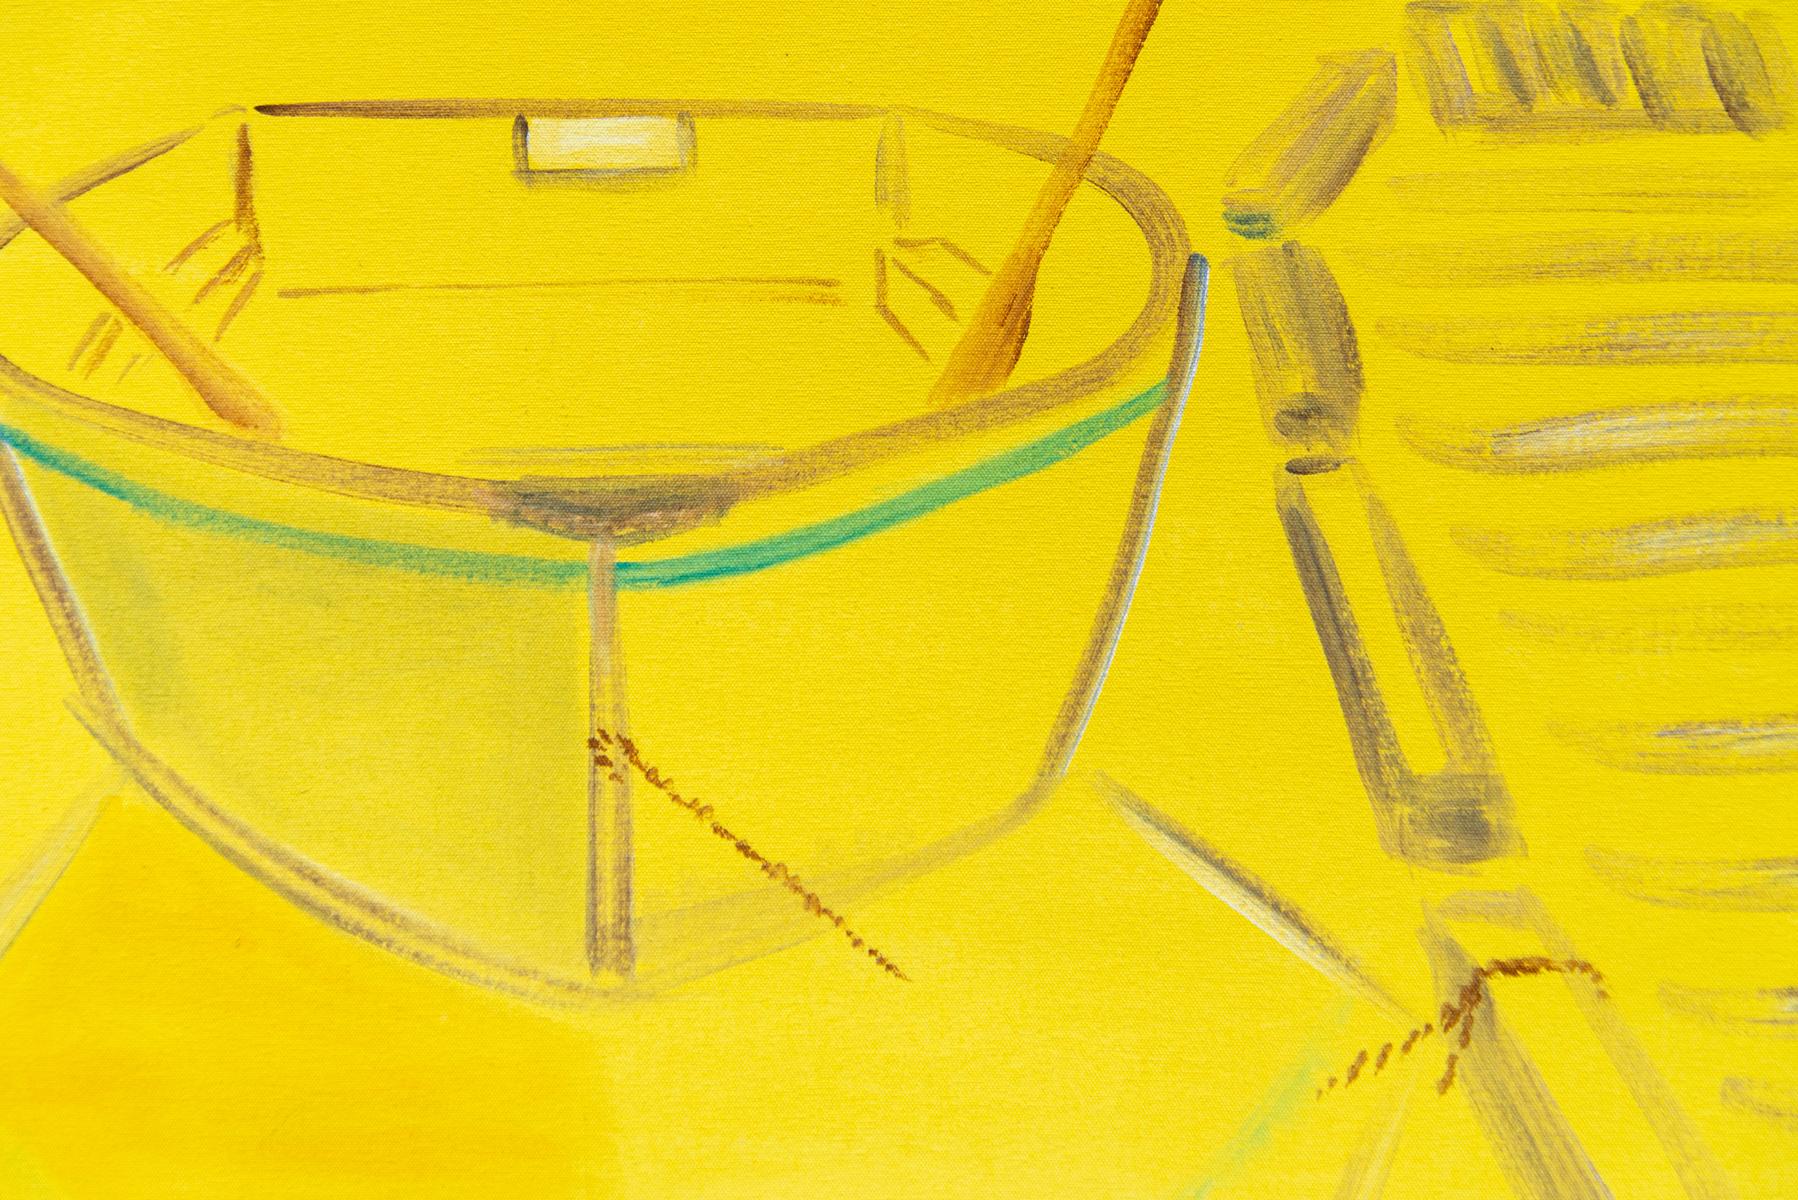 En jaune brillant, l'artiste vancouvéroise Pat Service a capturé l'image classique d'une barque amarrée à un quai. La forme est proche de l'abstraction puisque seul le contour du bateau en brun est visible. Service utilise la couleur avec beaucoup